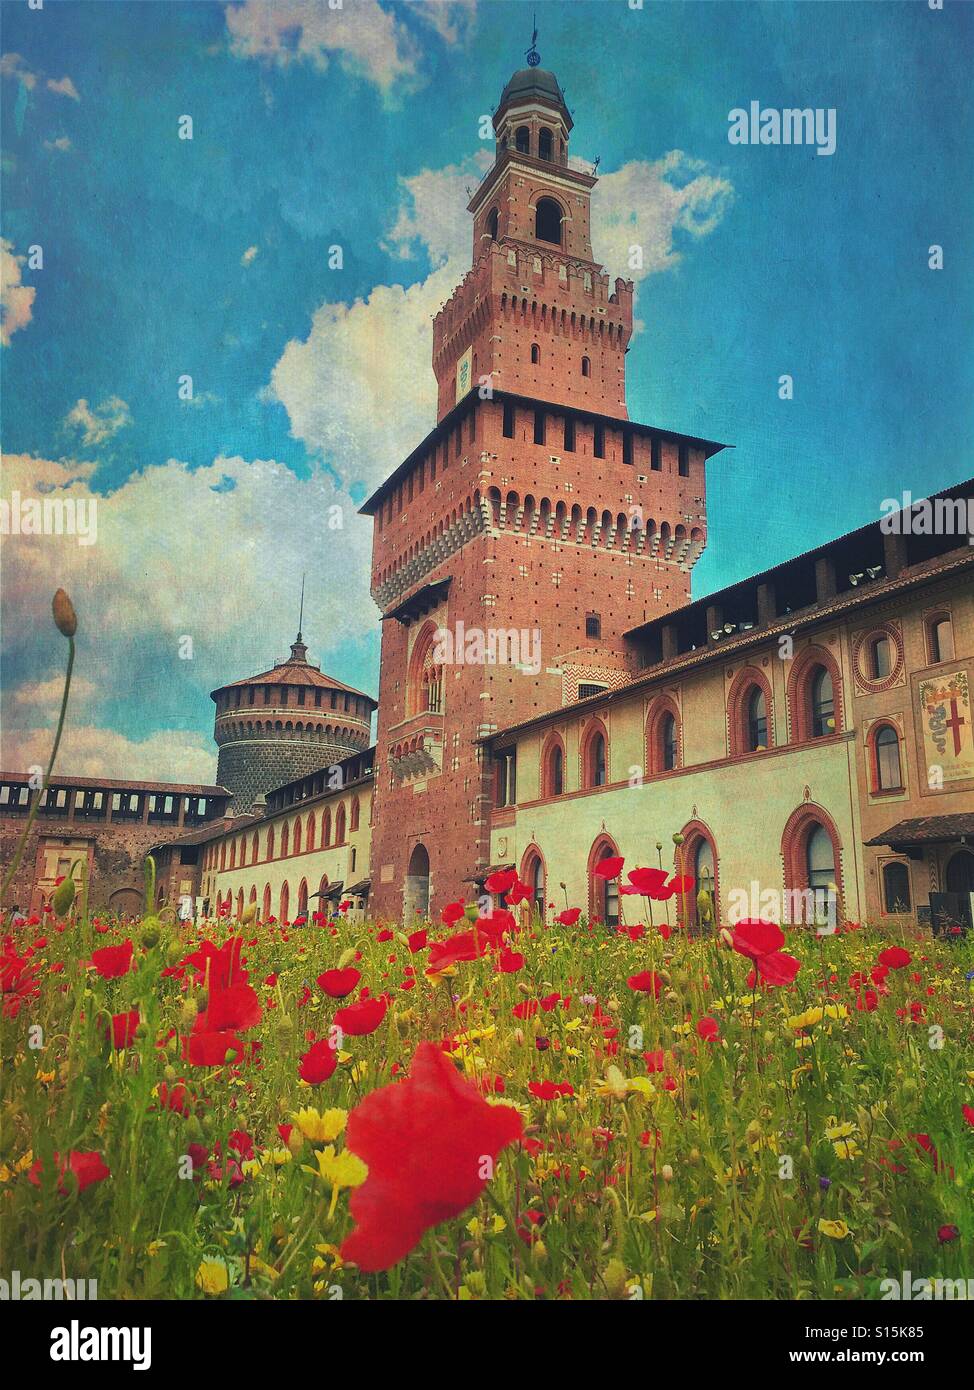 Superbe vue sur le château des Sforza à Milan, Italie, avec champ de fleur de pavot rouge au premier plan. Vintage paper texture overlay. Banque D'Images